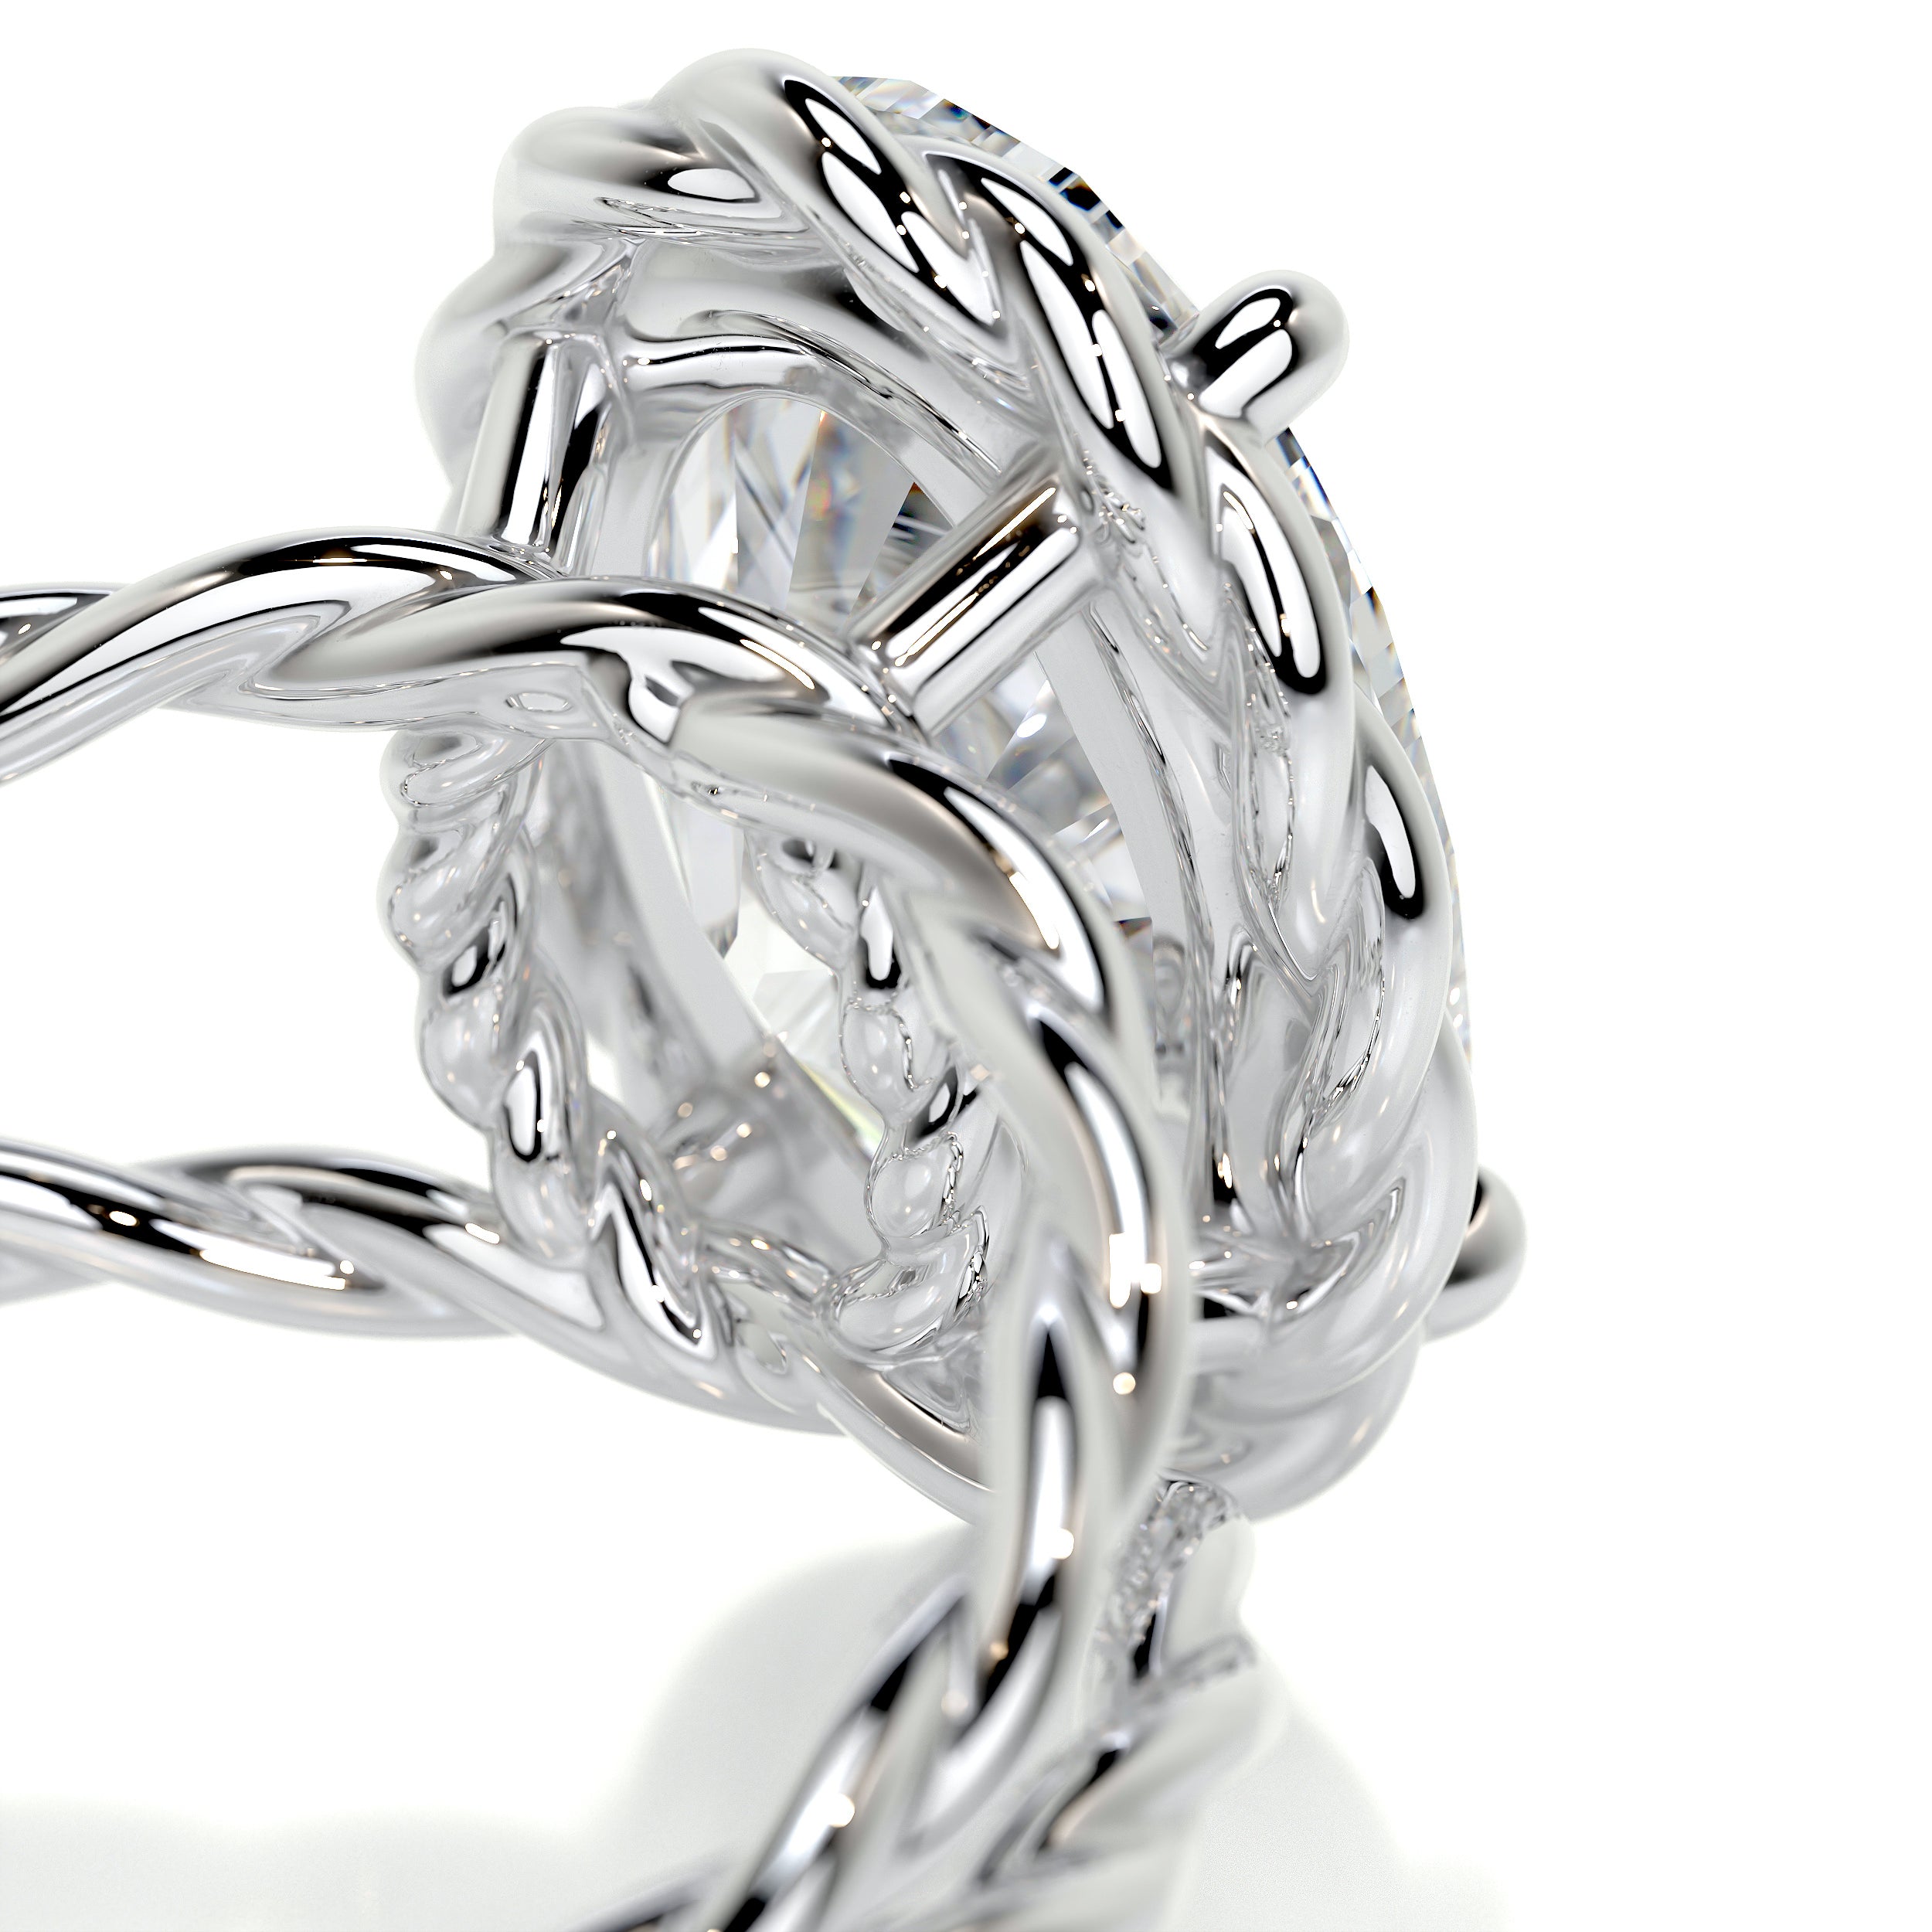 Milani Diamond Engagement Ring   (3 Carat) -14K White Gold